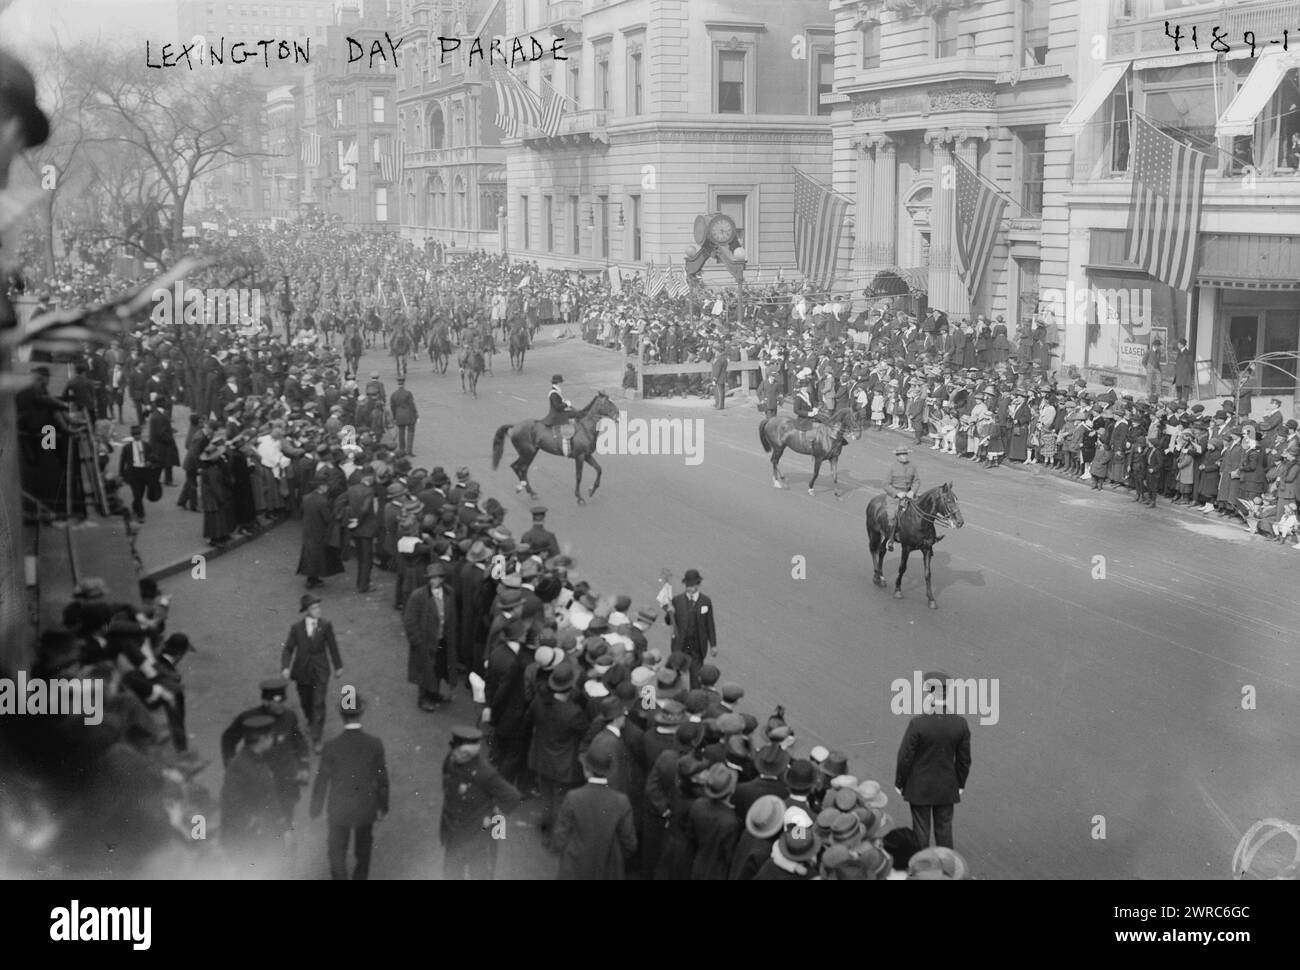 Lexington Day Parade, la fotografia mostra la celebrazione del Wake Up America/Lexington Day/Patriot's Day, Fifth Avenue, New York City., 1917 aprile 19, Glass negatives, 1 negativo: vetro Foto Stock